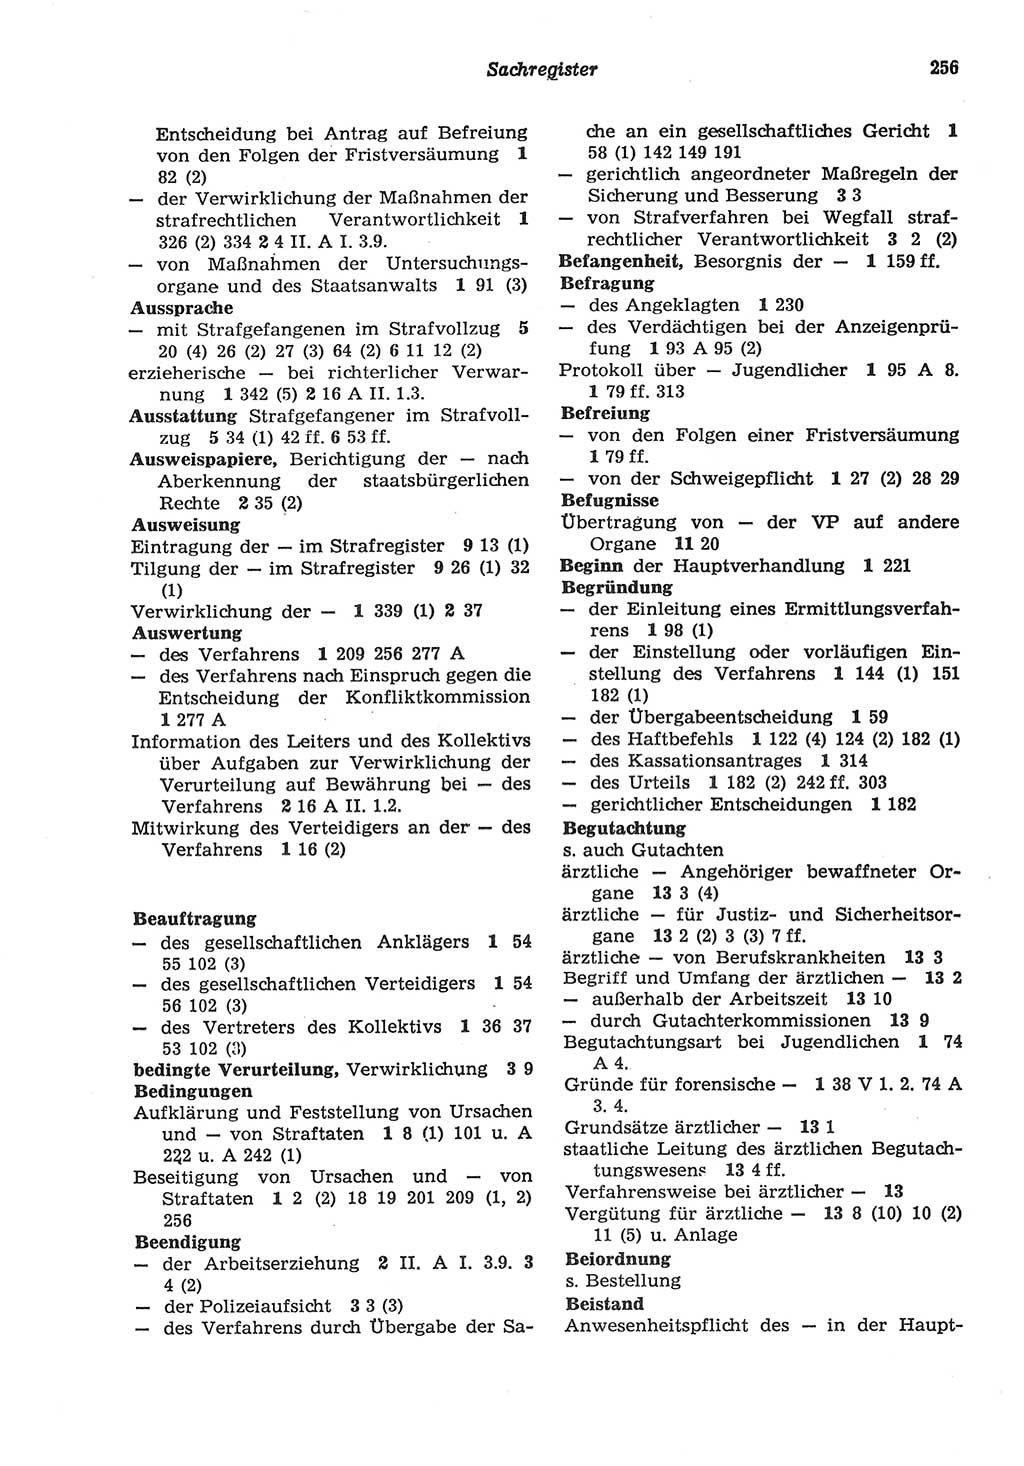 Strafprozeßordnung (StPO) der Deutschen Demokratischen Republik (DDR) sowie angrenzende Gesetze und Bestimmungen 1977, Seite 256 (StPO DDR Ges. Best. 1977, S. 256)